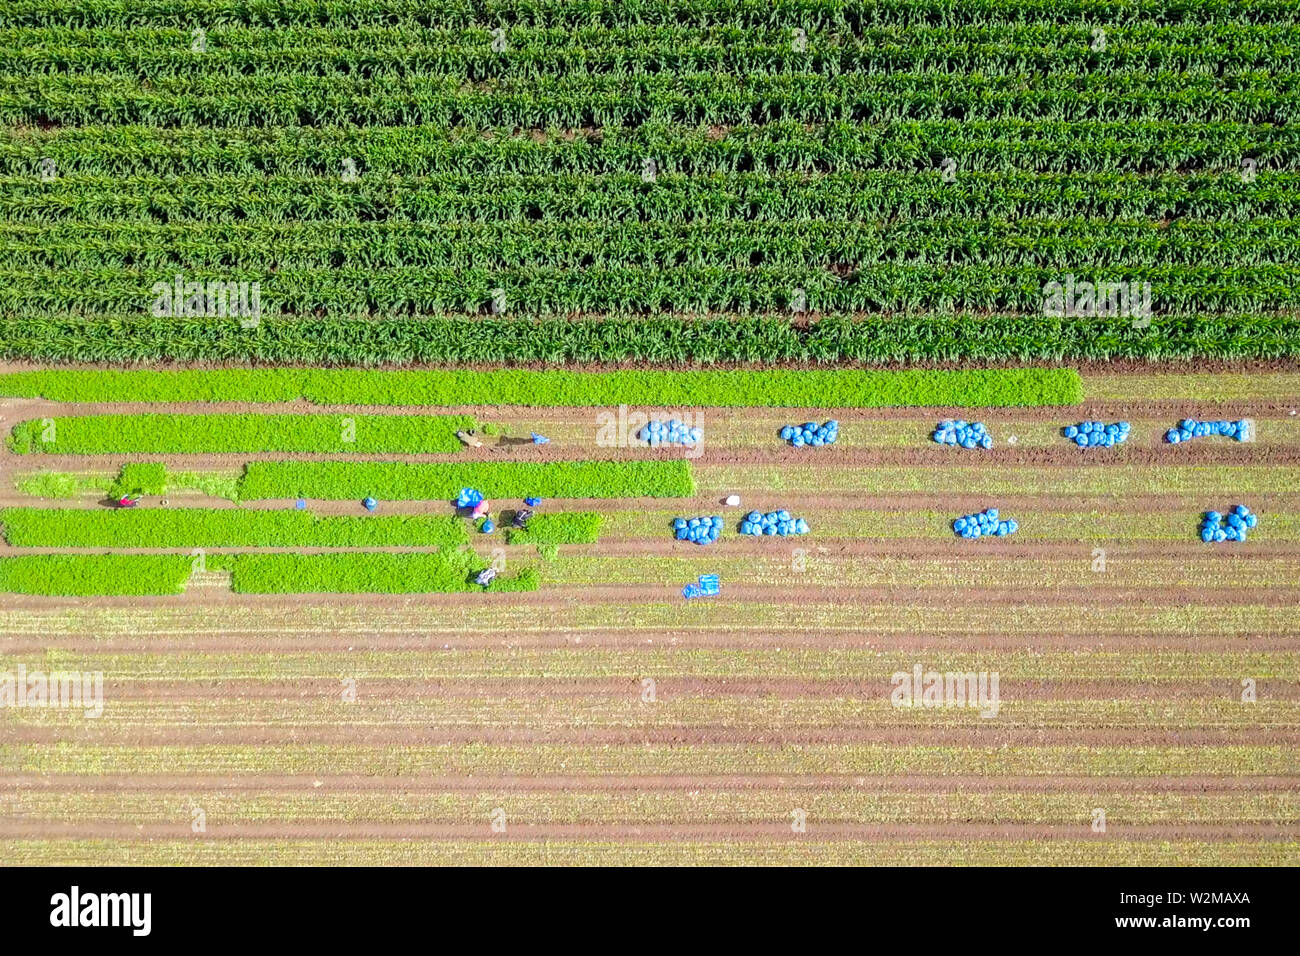 Agricoltura biologica - riprese aeree di lavoratori che raccolgono manualmente prezzemolo fresco. Foto Stock